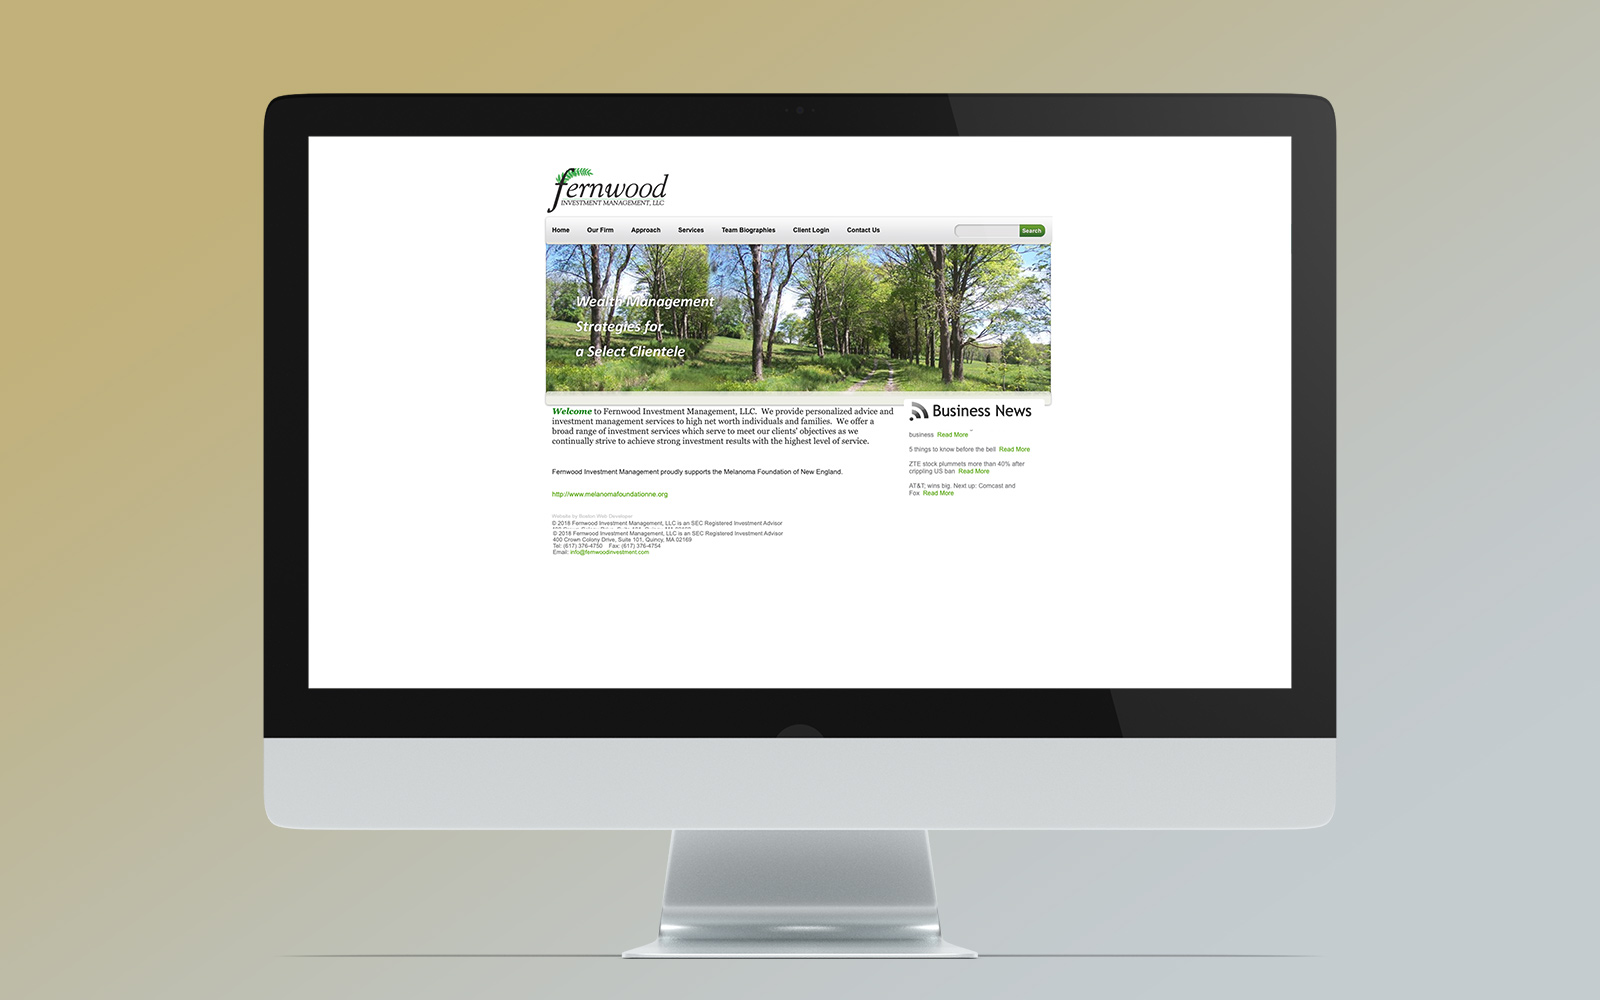 fernwood's old website on desktop